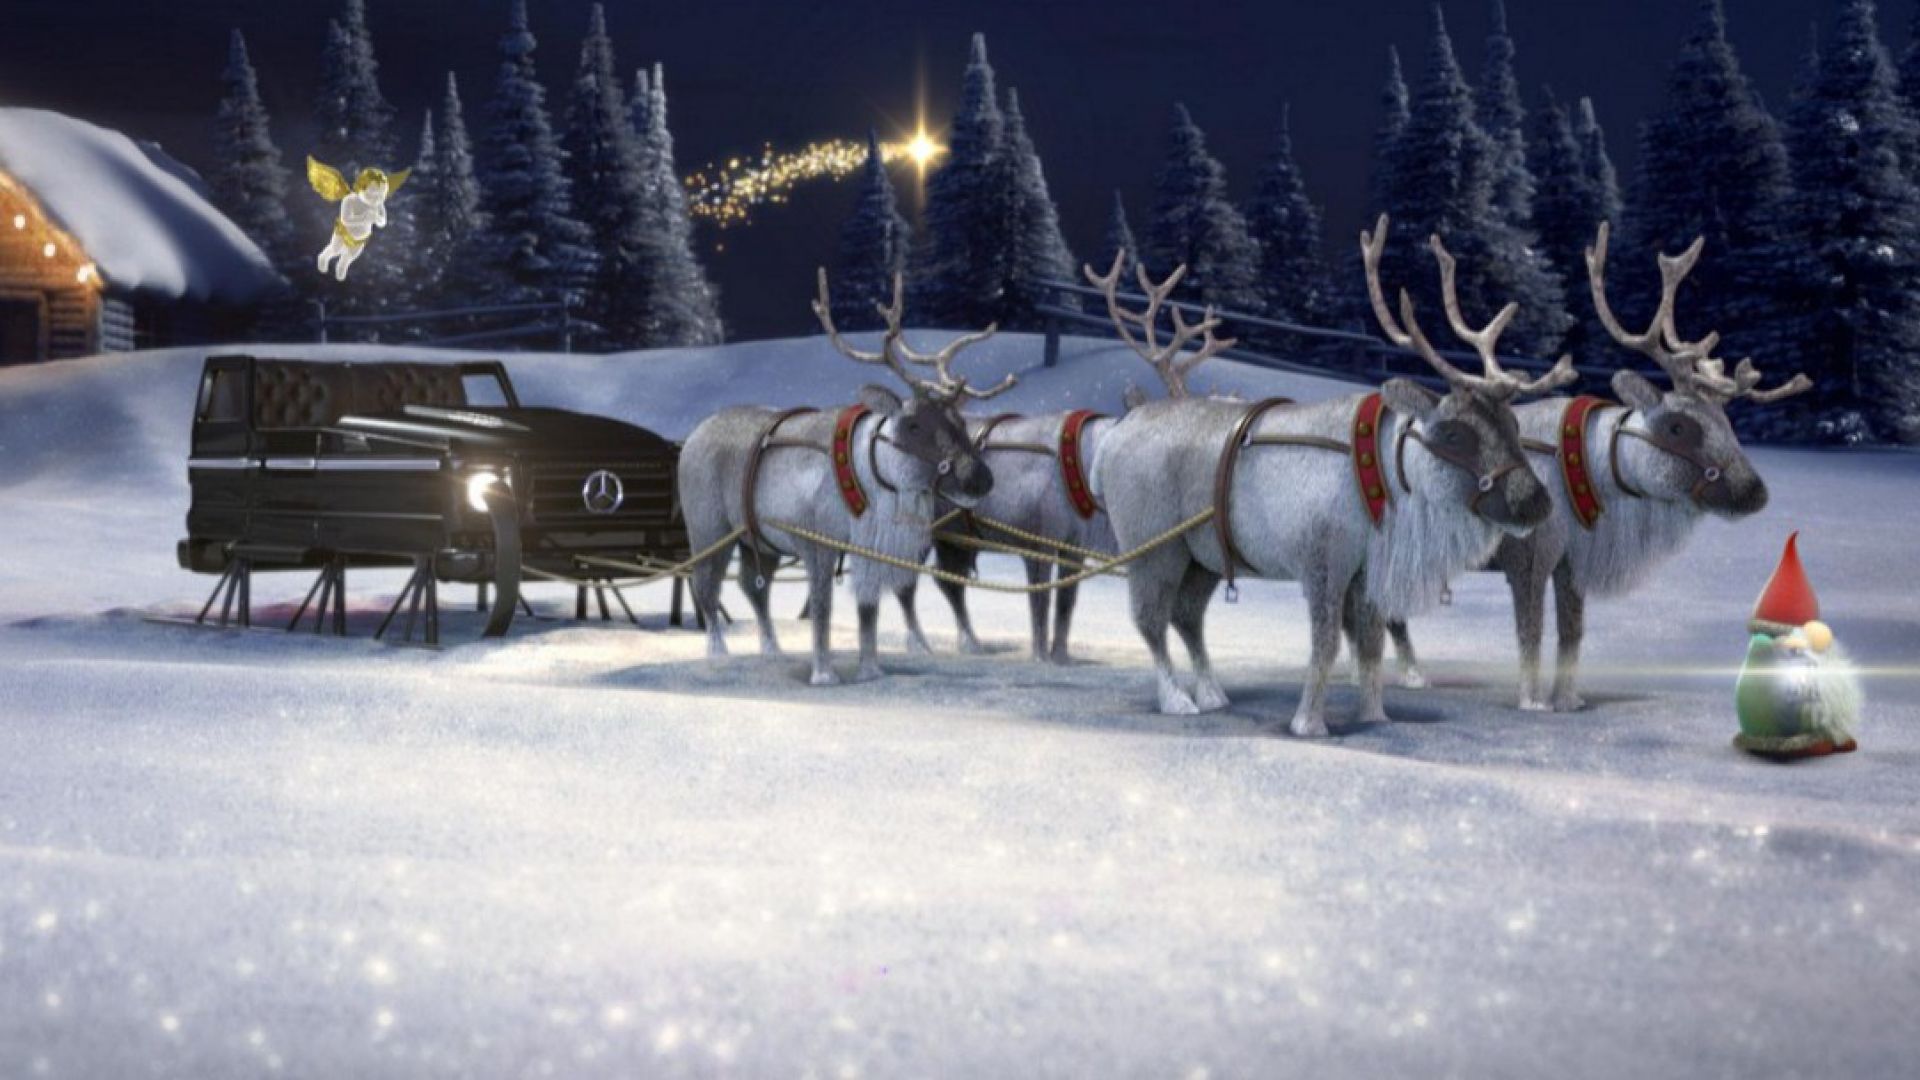 Foto Della Slitta Di Babbo Natale.Natale 2015 Mercedes Il Configuratore Della Slitta Di Babbo Natale Motorbox